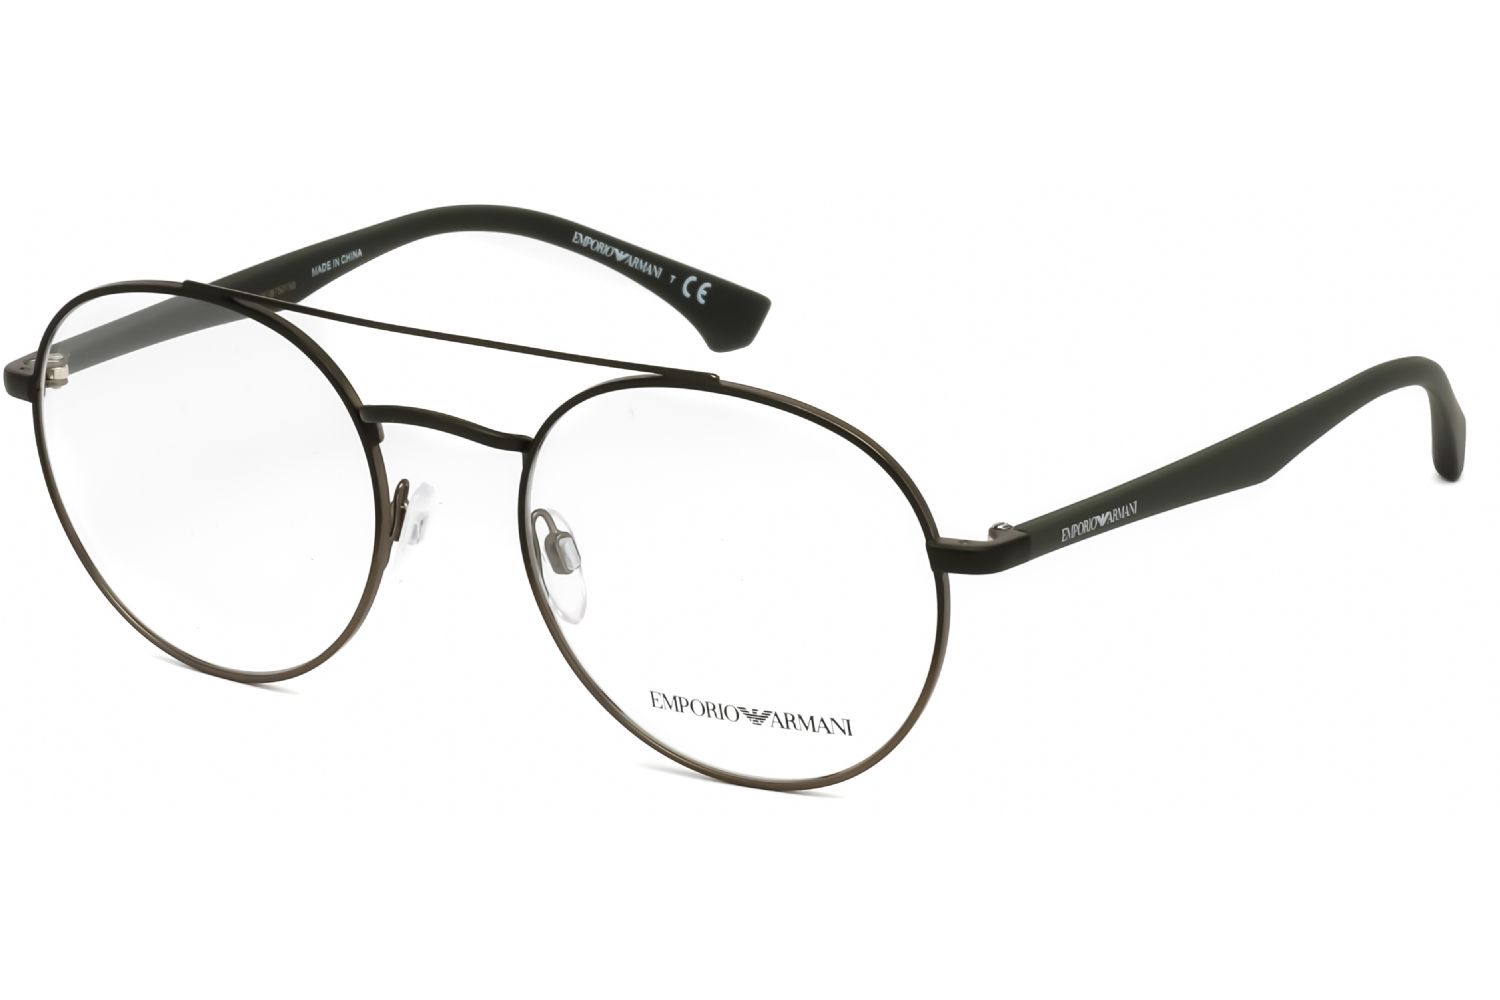 StyleName: Emporio Armani EA1107 Eyeglasses Matte Green/Gunmetal Brand: Emporio Armani Frame Style: Round Frame Material: metal Color : Matte Green/Gunmetal Men Eyeglasses